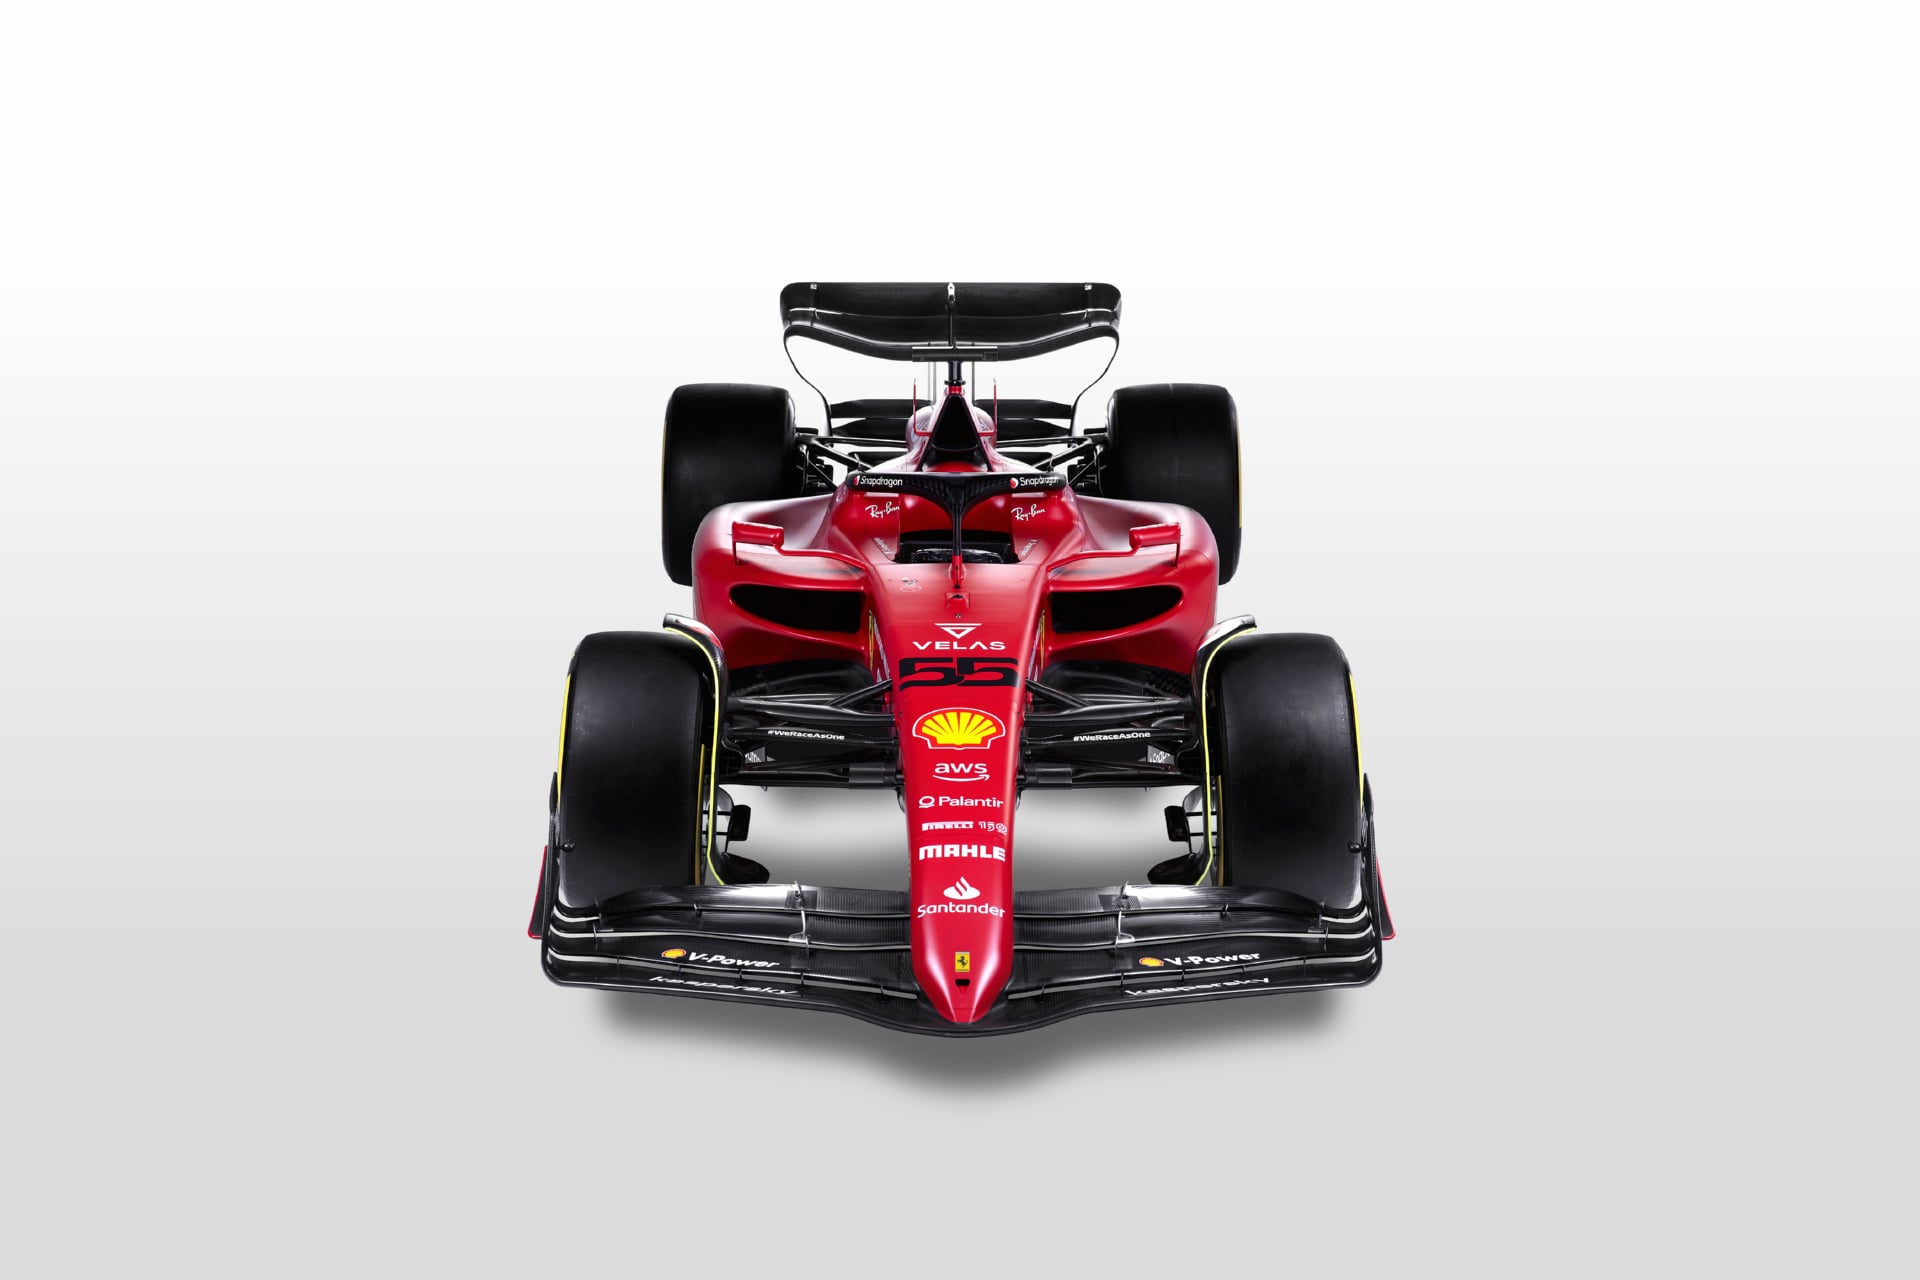 Ferrari F1-75 at 1600 x 1200 size wallpapers HD quality